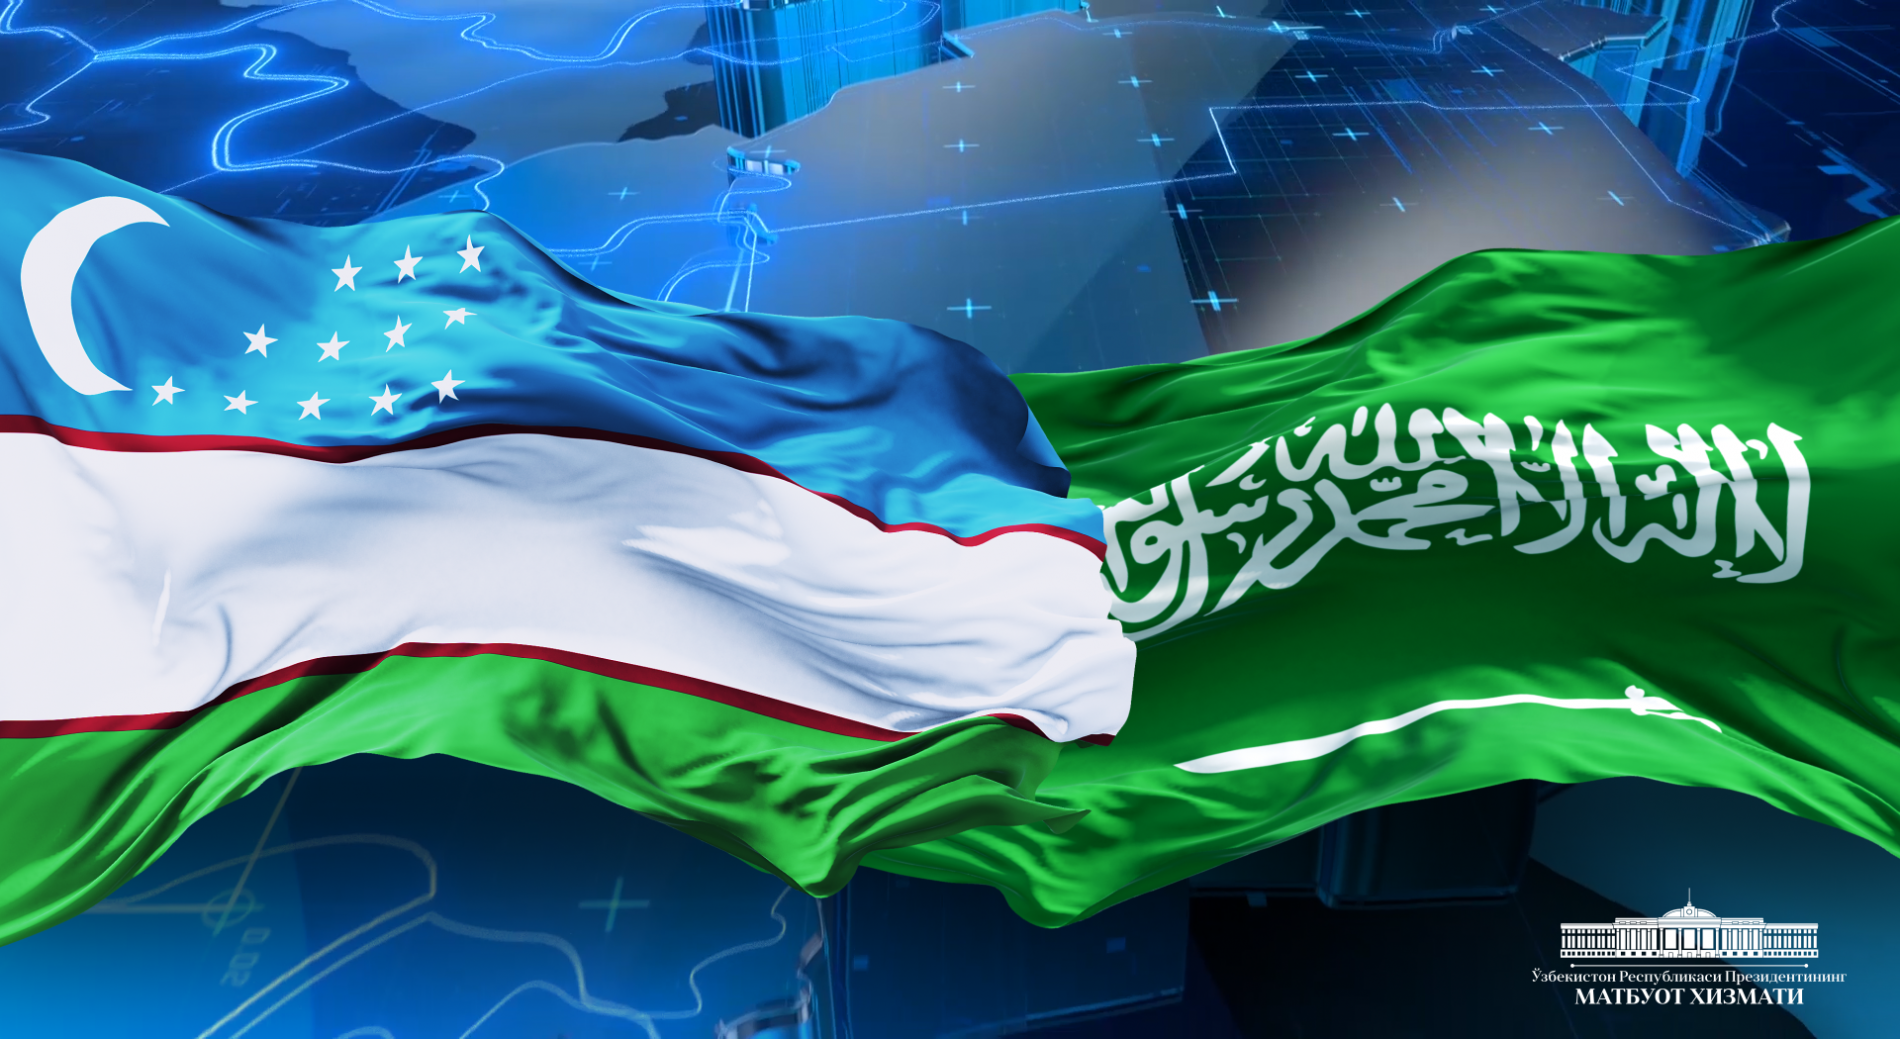 Президент Республики Узбекистан посетит Саудовскую Аравию с государственным визитом